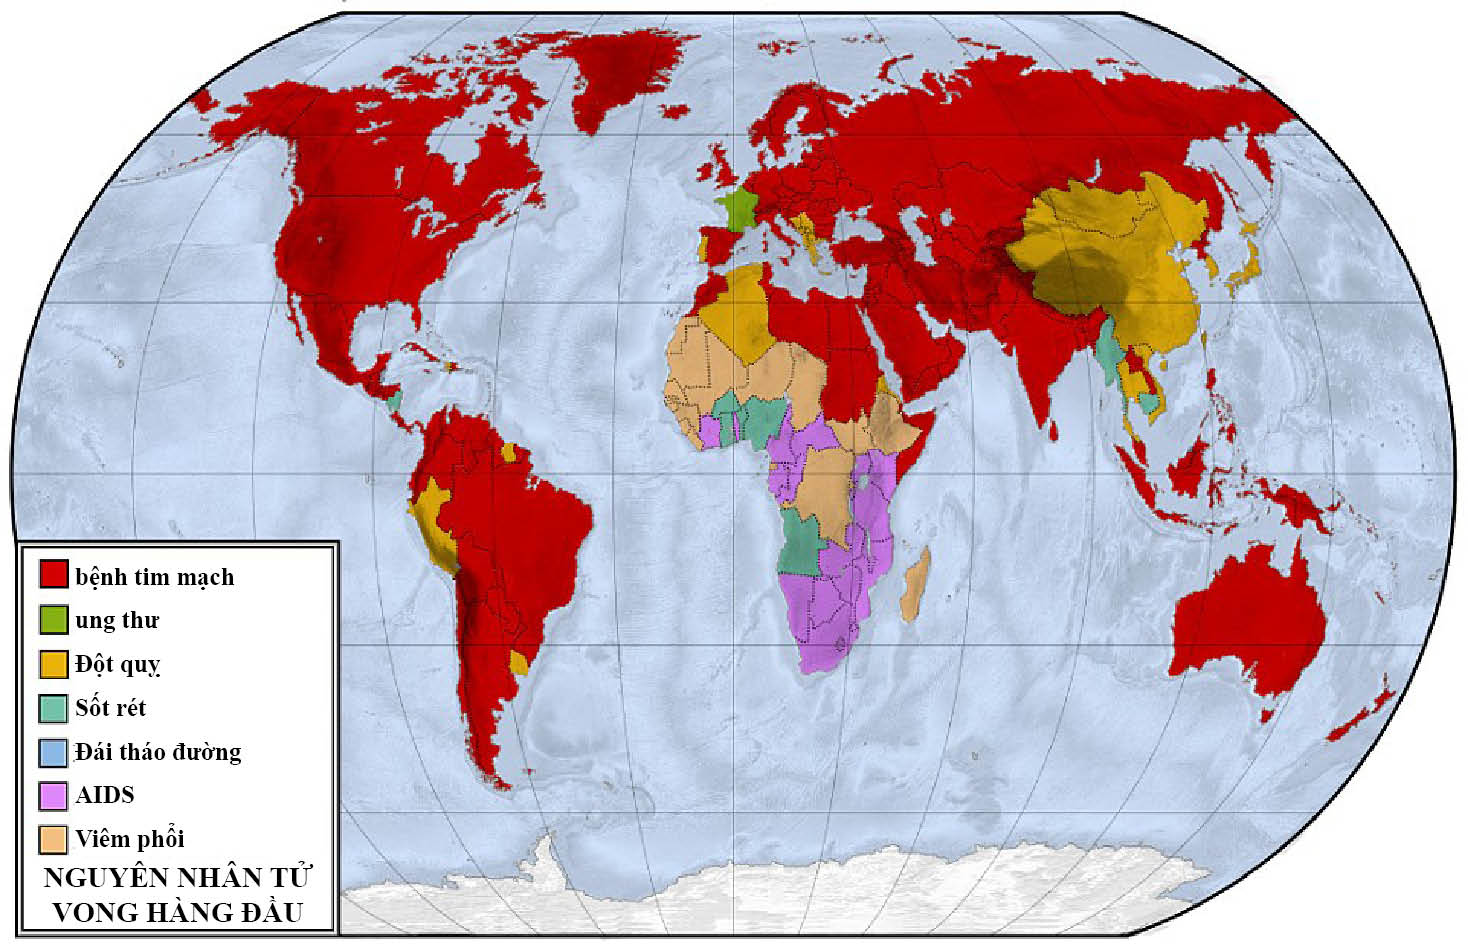 Những con số thống kê bệnh tật: quả Địa cầu này minh họa nguyên nhân tử vong khắp thế giới, theo nghiên cứu của Martin. Trên bản đồ, căn bệnh giết người nhiều nhất ở các nước là tim mạch, trong đó có Úc, một vài phần châu Âu, và Mỹ. trong khi đó, đột quỵ là nguyên nhân tử vong hàng đầu ở nhiều phần của châu Á.